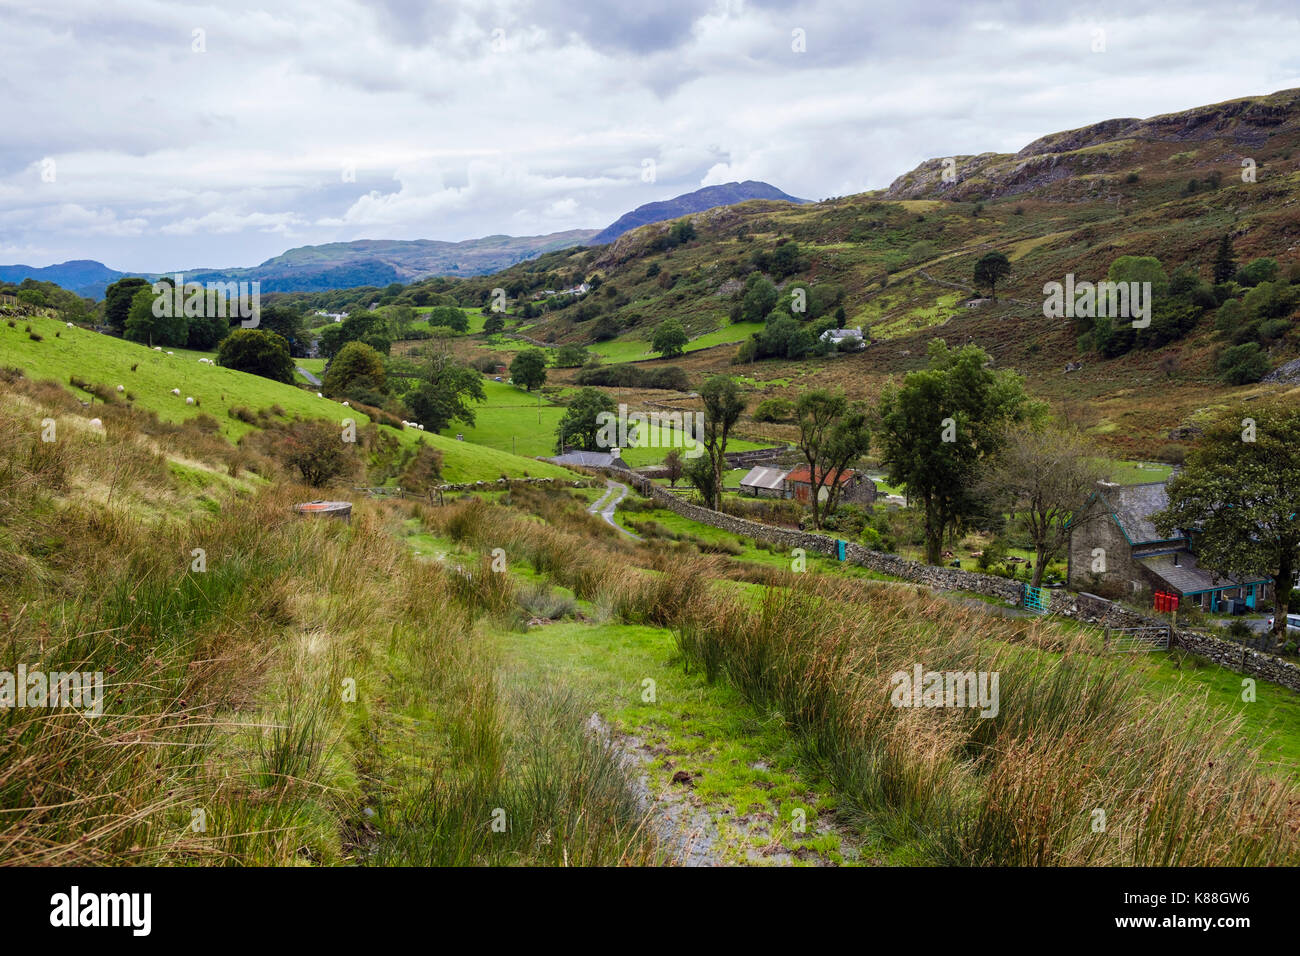 Vue de Hill Farm et la campagne de MCG Croesor vallée verte dans le parc national de Snowdonia. Croesor, Gwynedd, au nord du Pays de Galles, Royaume-Uni, Angleterre Banque D'Images